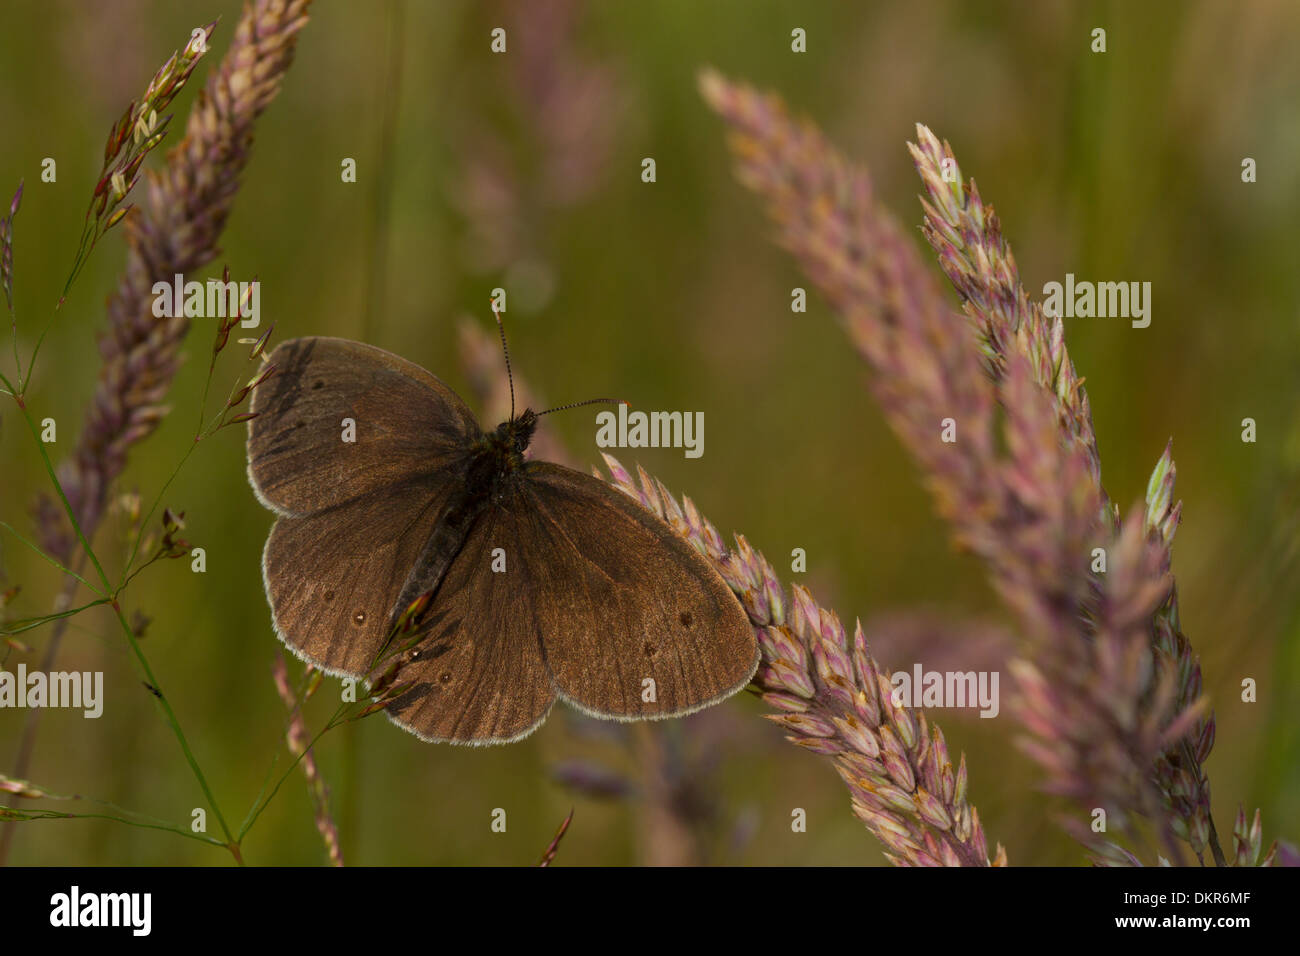 (Un papillon Aphantopus hyperantus) au soleil sur l'herbe. Powys,Pays de Galles. Juillet. Banque D'Images